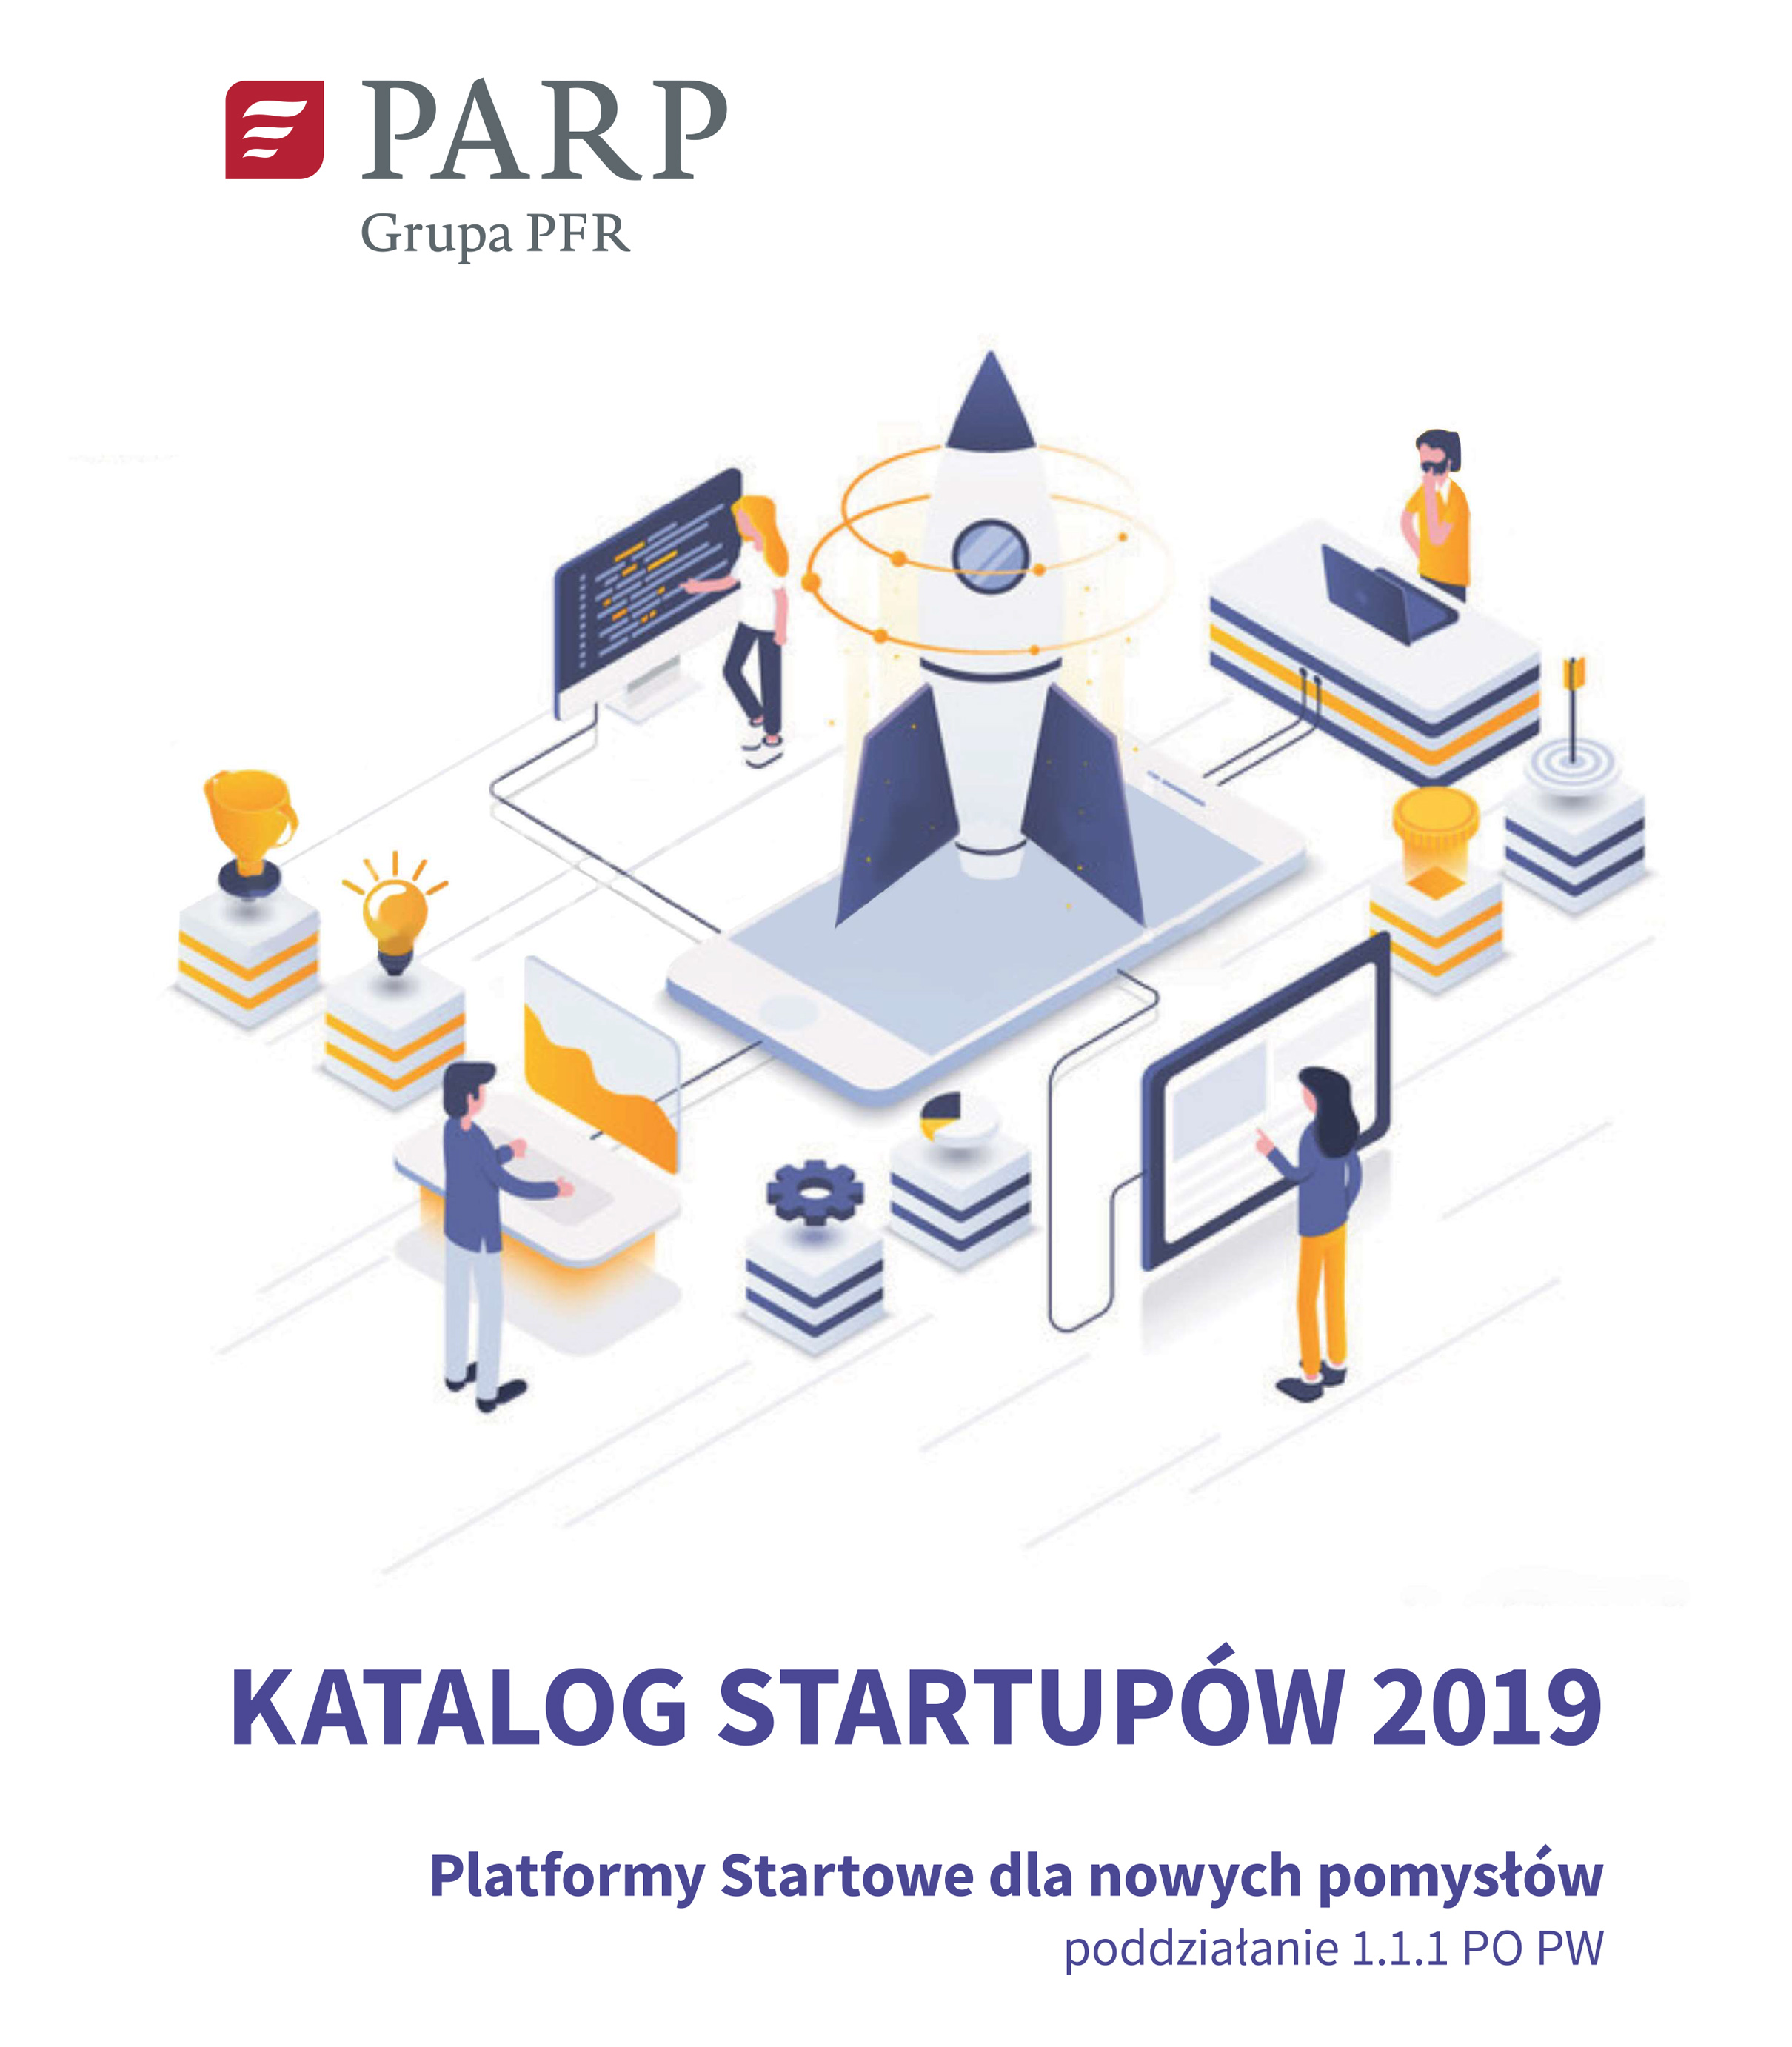 Katalog startupów 2019 - Platformy startowe dla nowych pomysłów, poddziałanie 1.1.1 PO PW